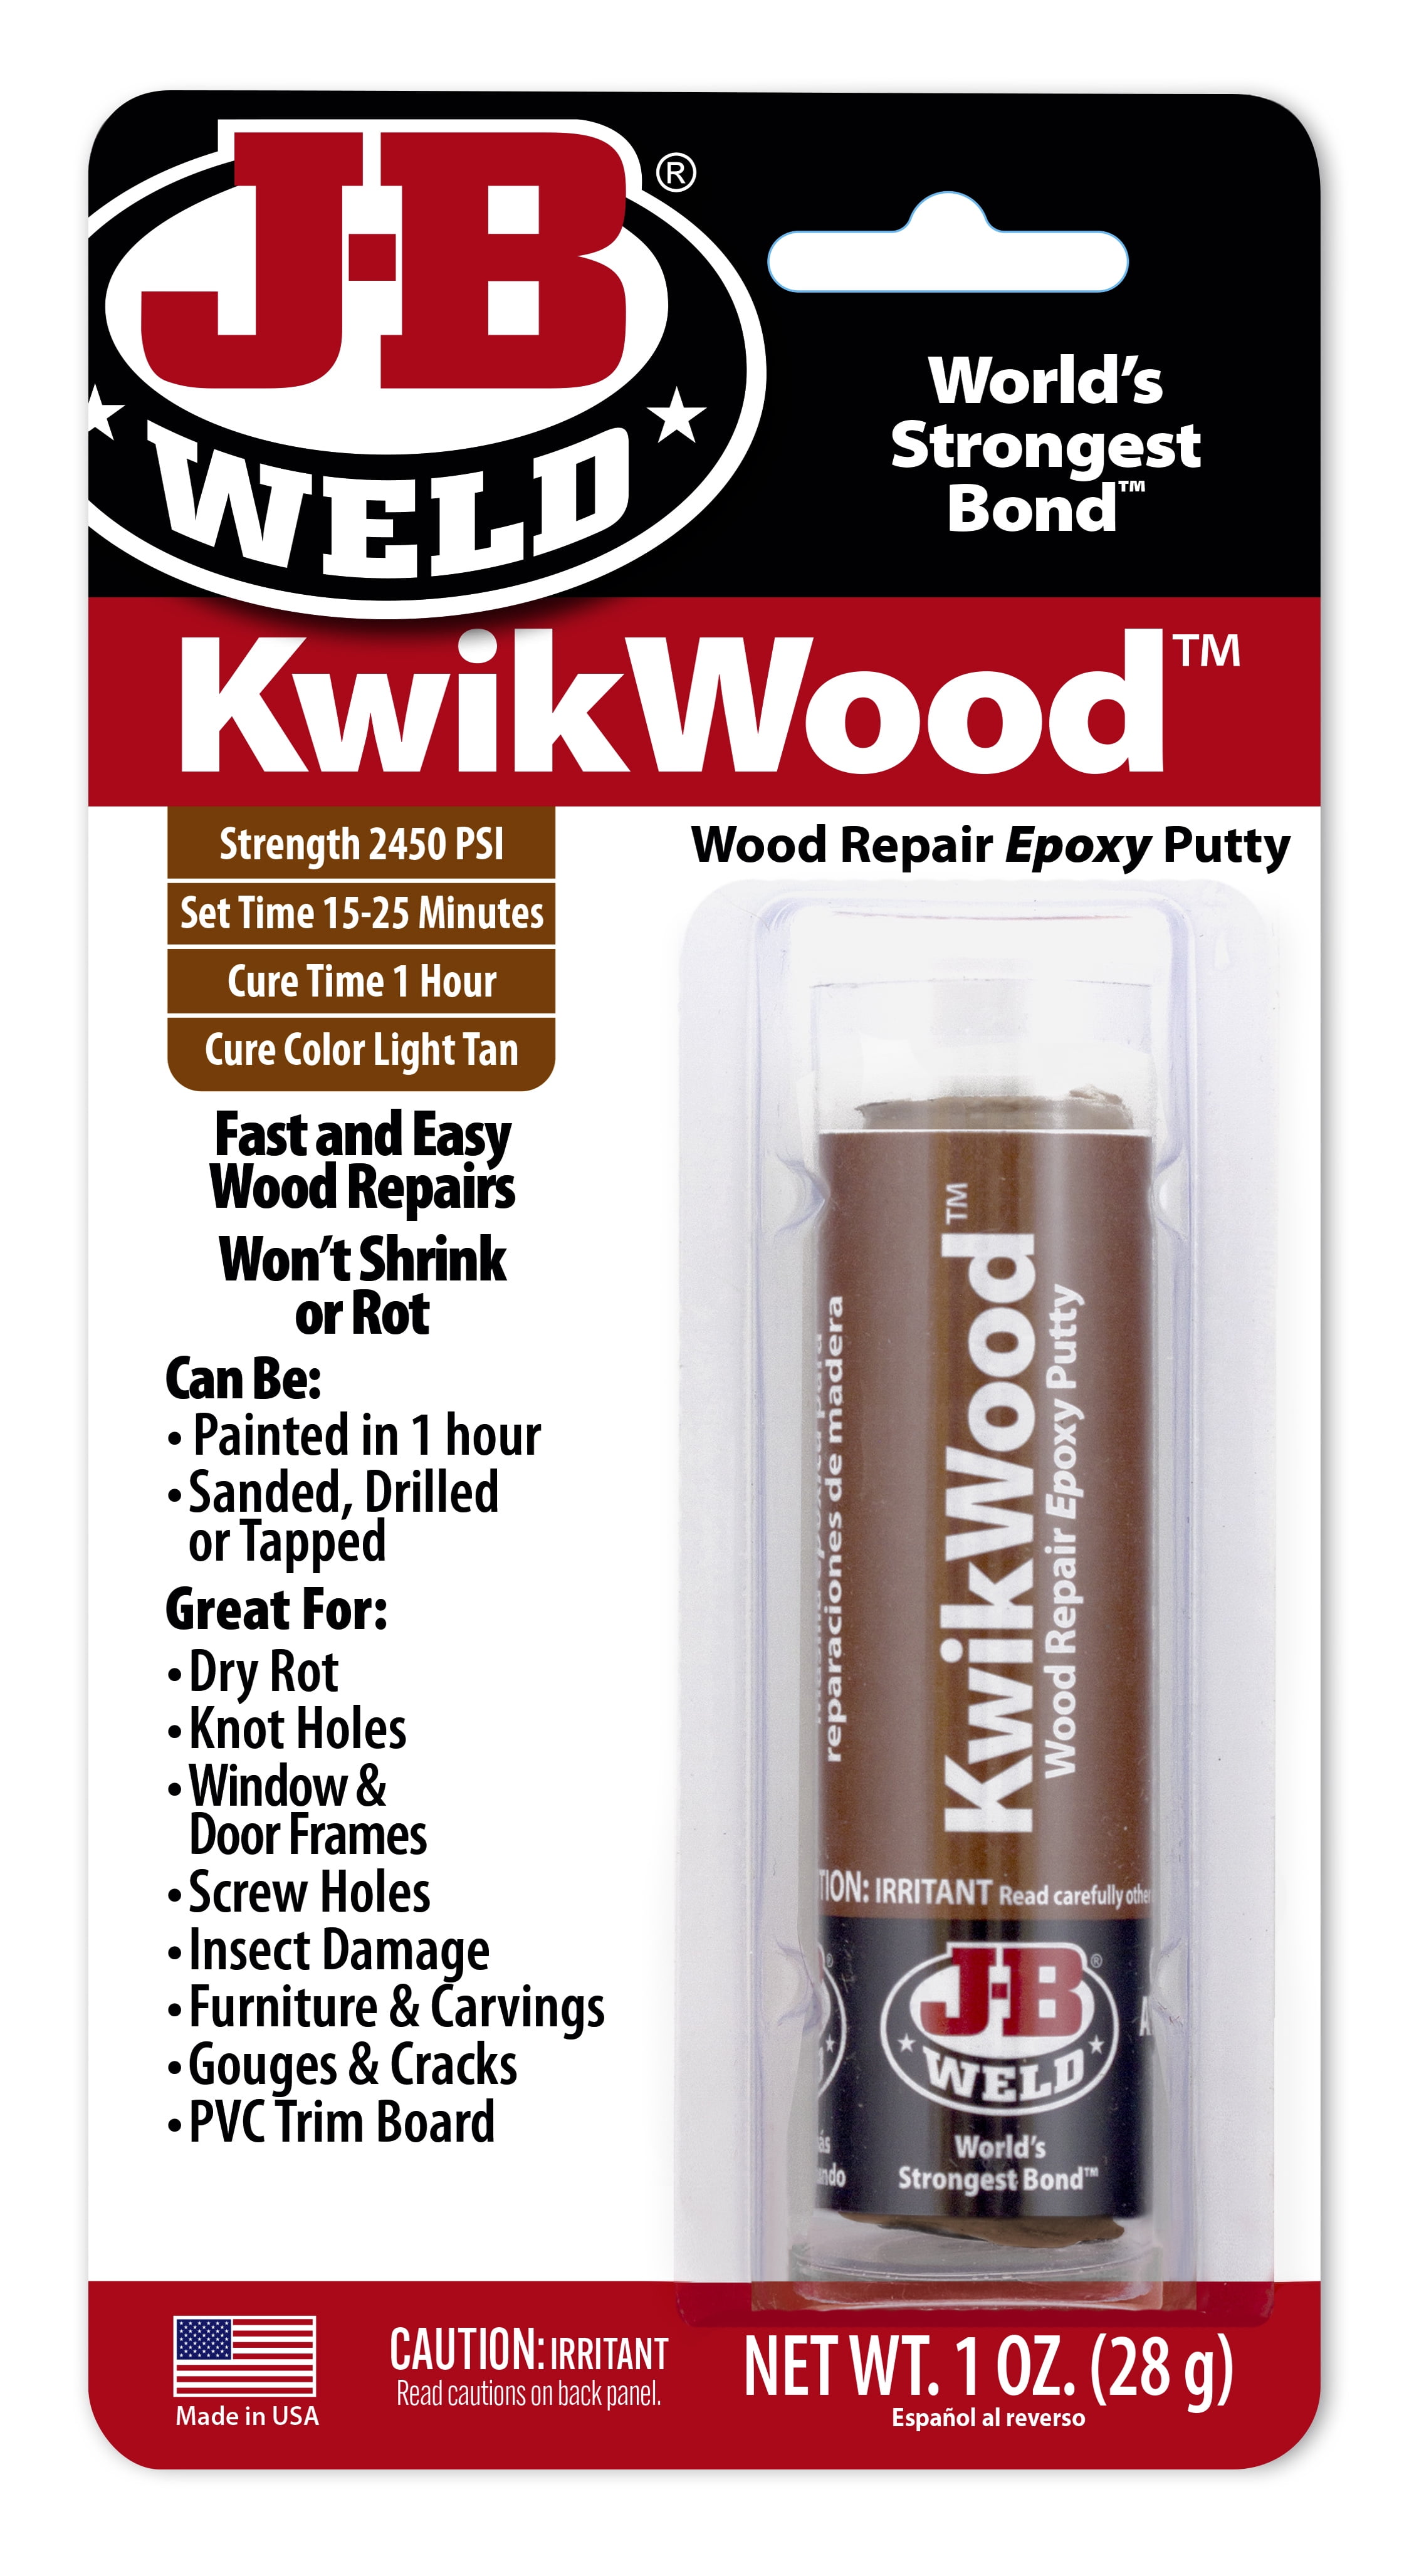 Dap Plastic Wood Filler in Natural & JB Weld KwikWood World's